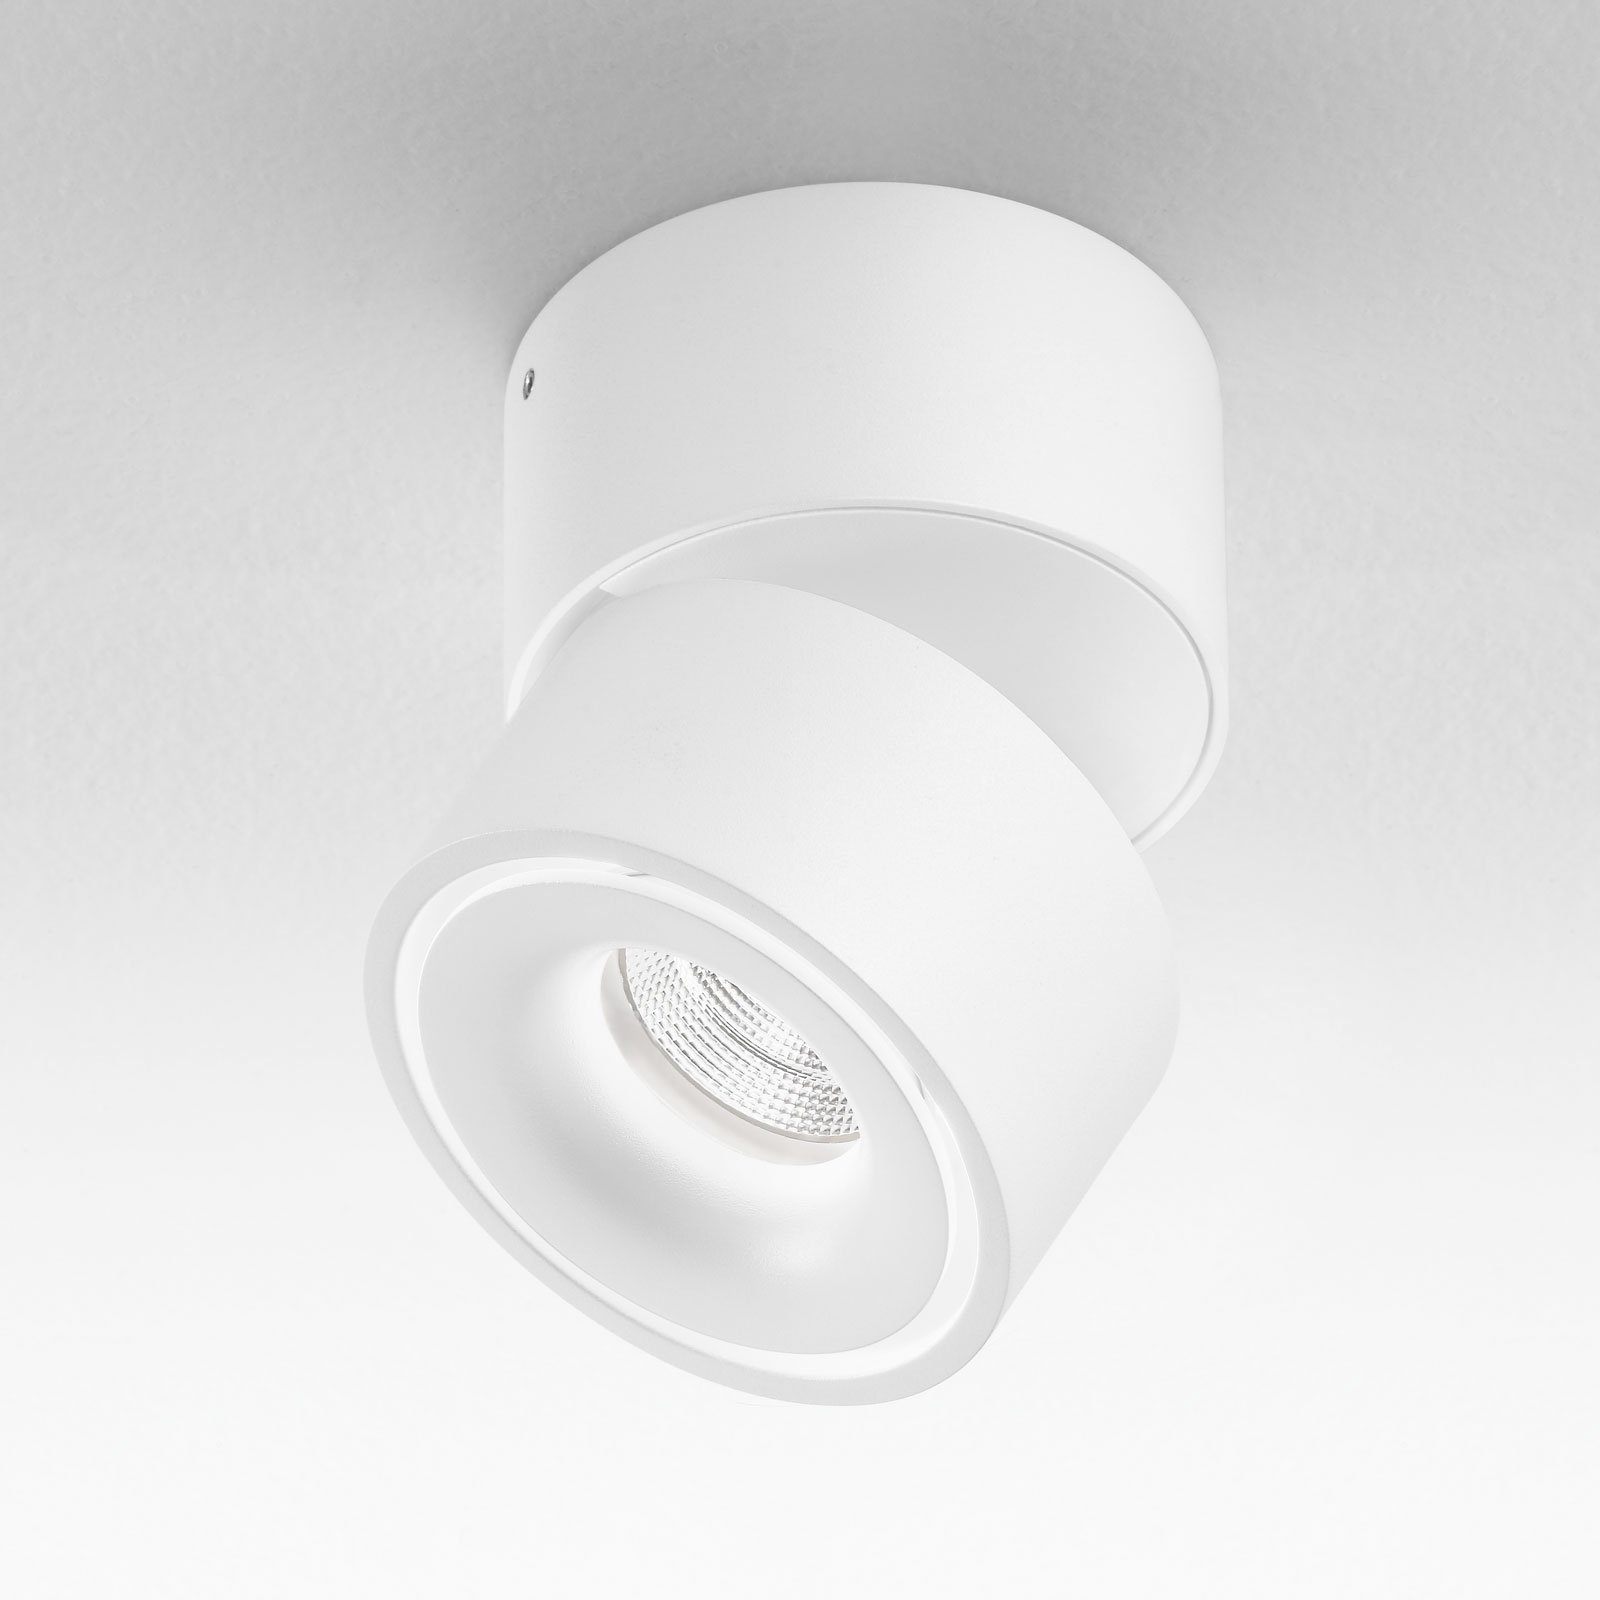 Egger Clippo LED stropní spot bílý, 3 000 K